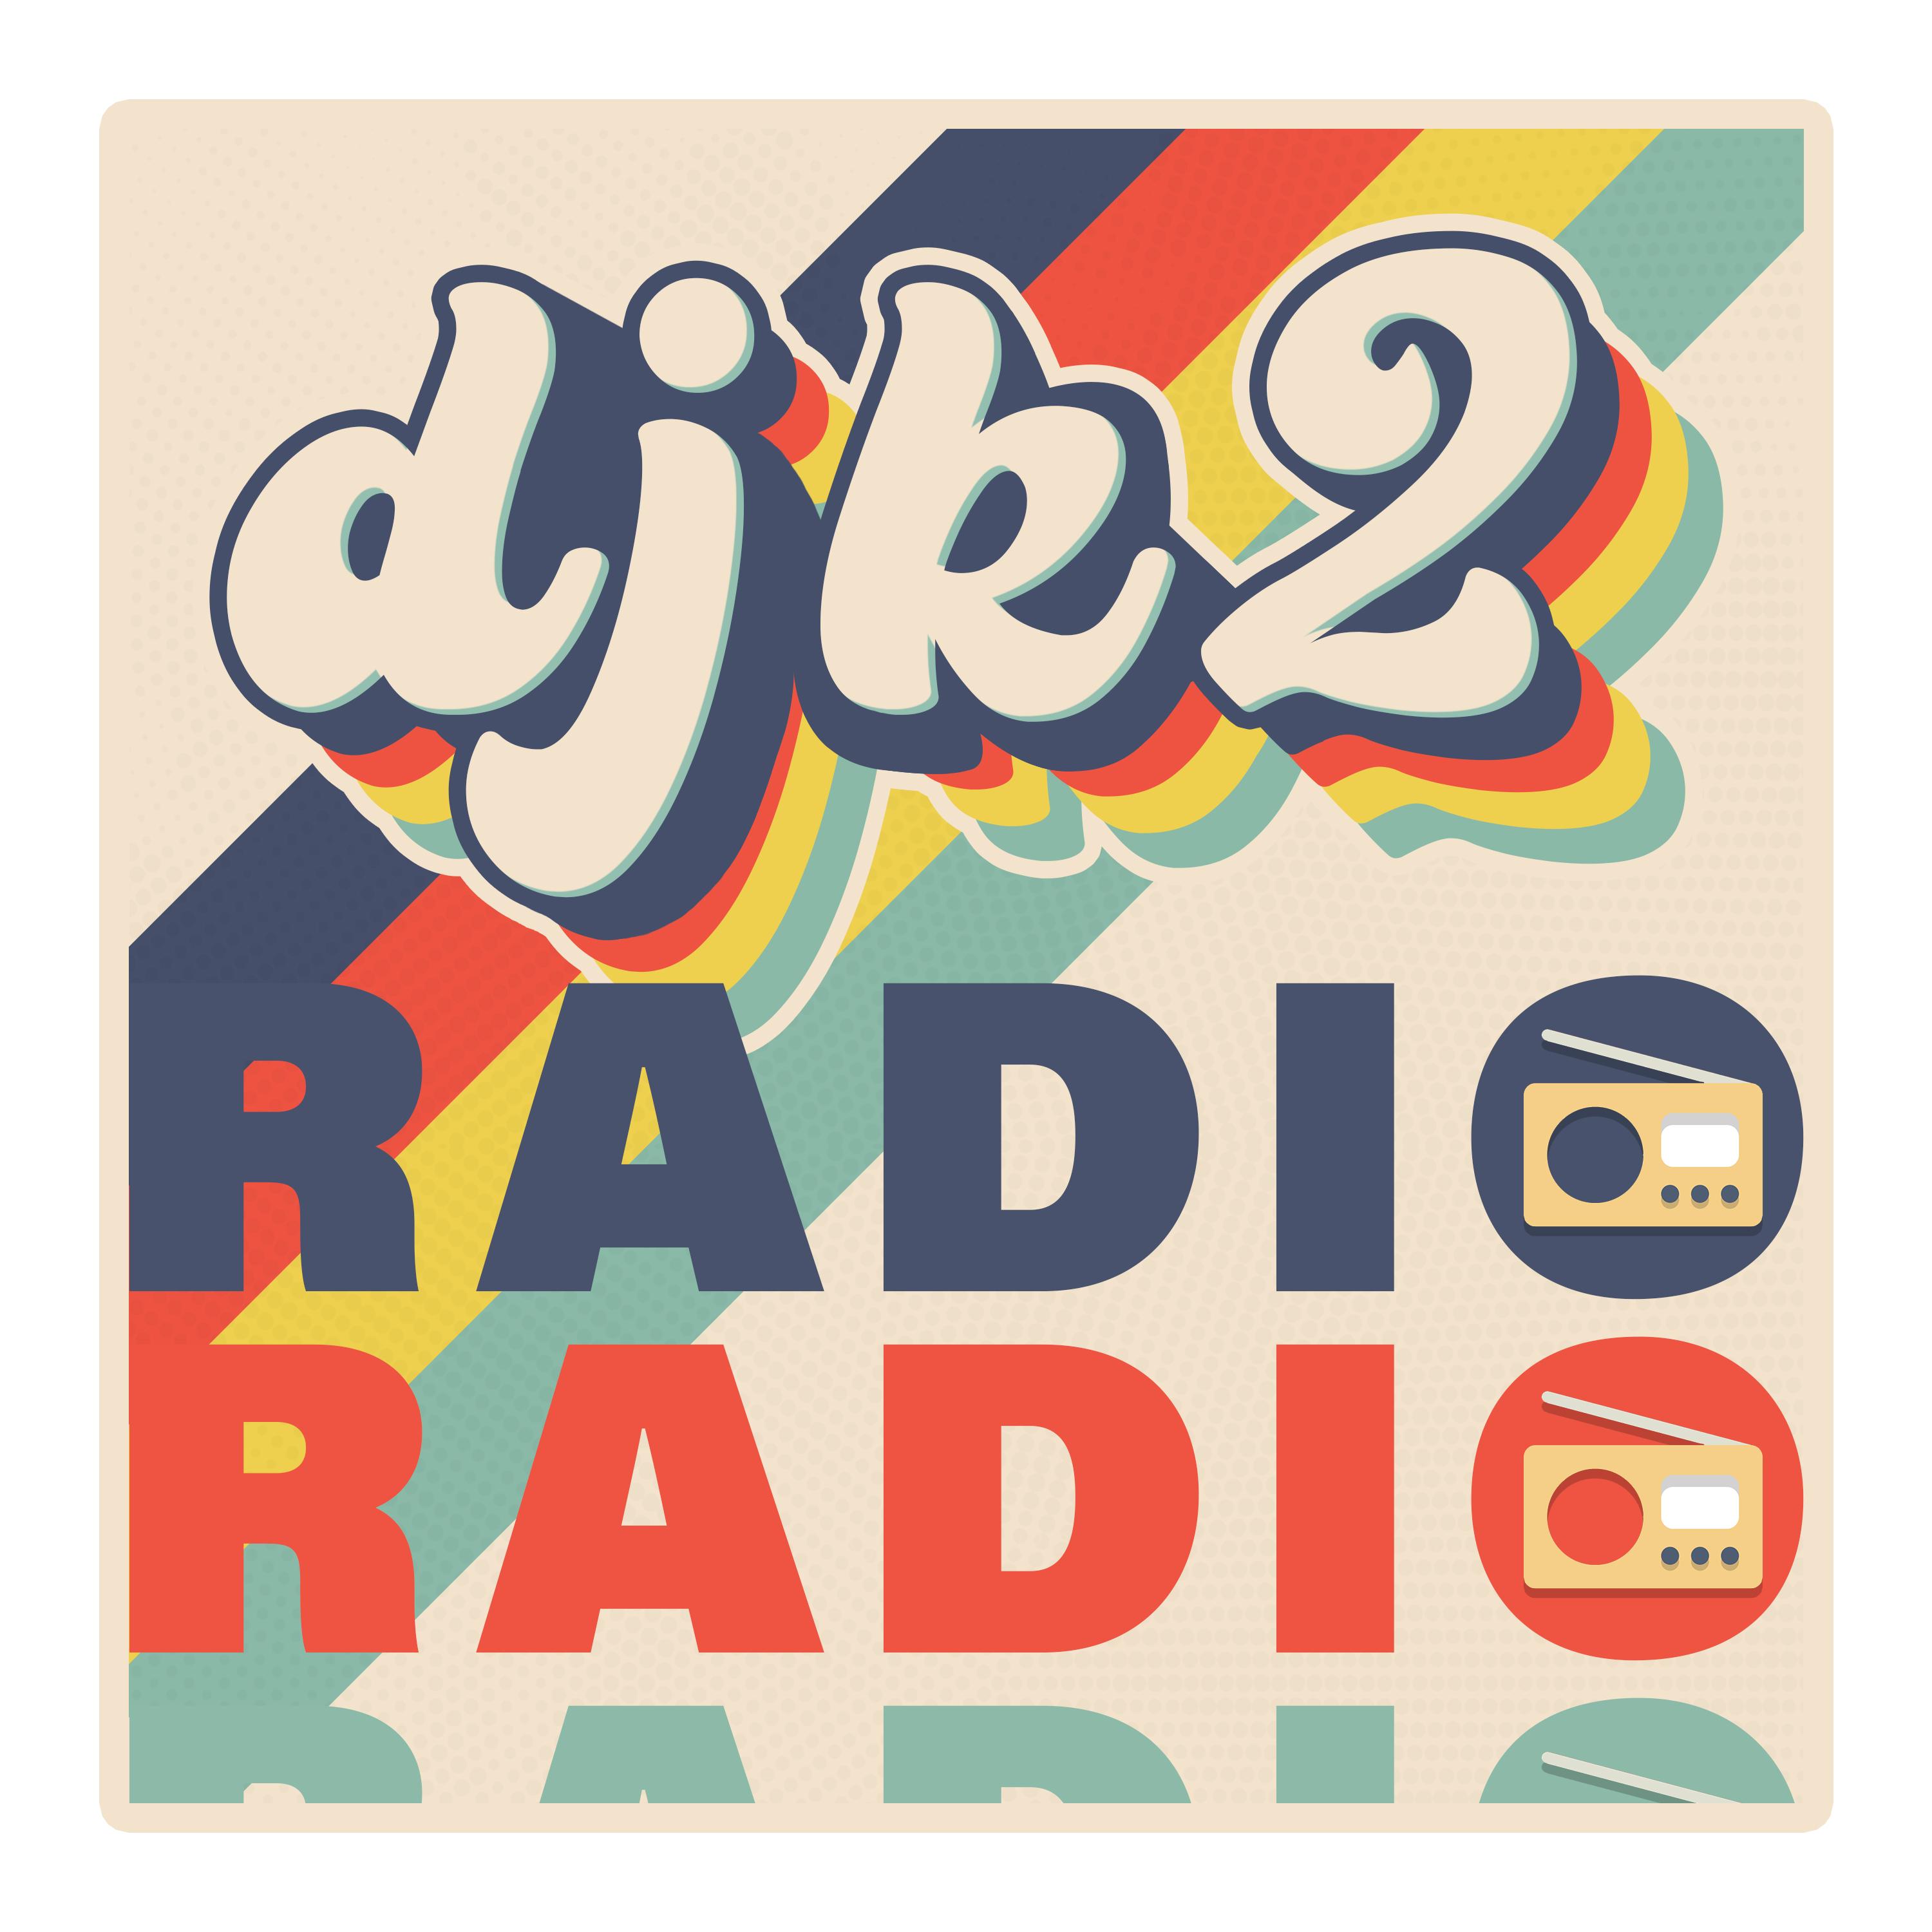 Djk2 Radio